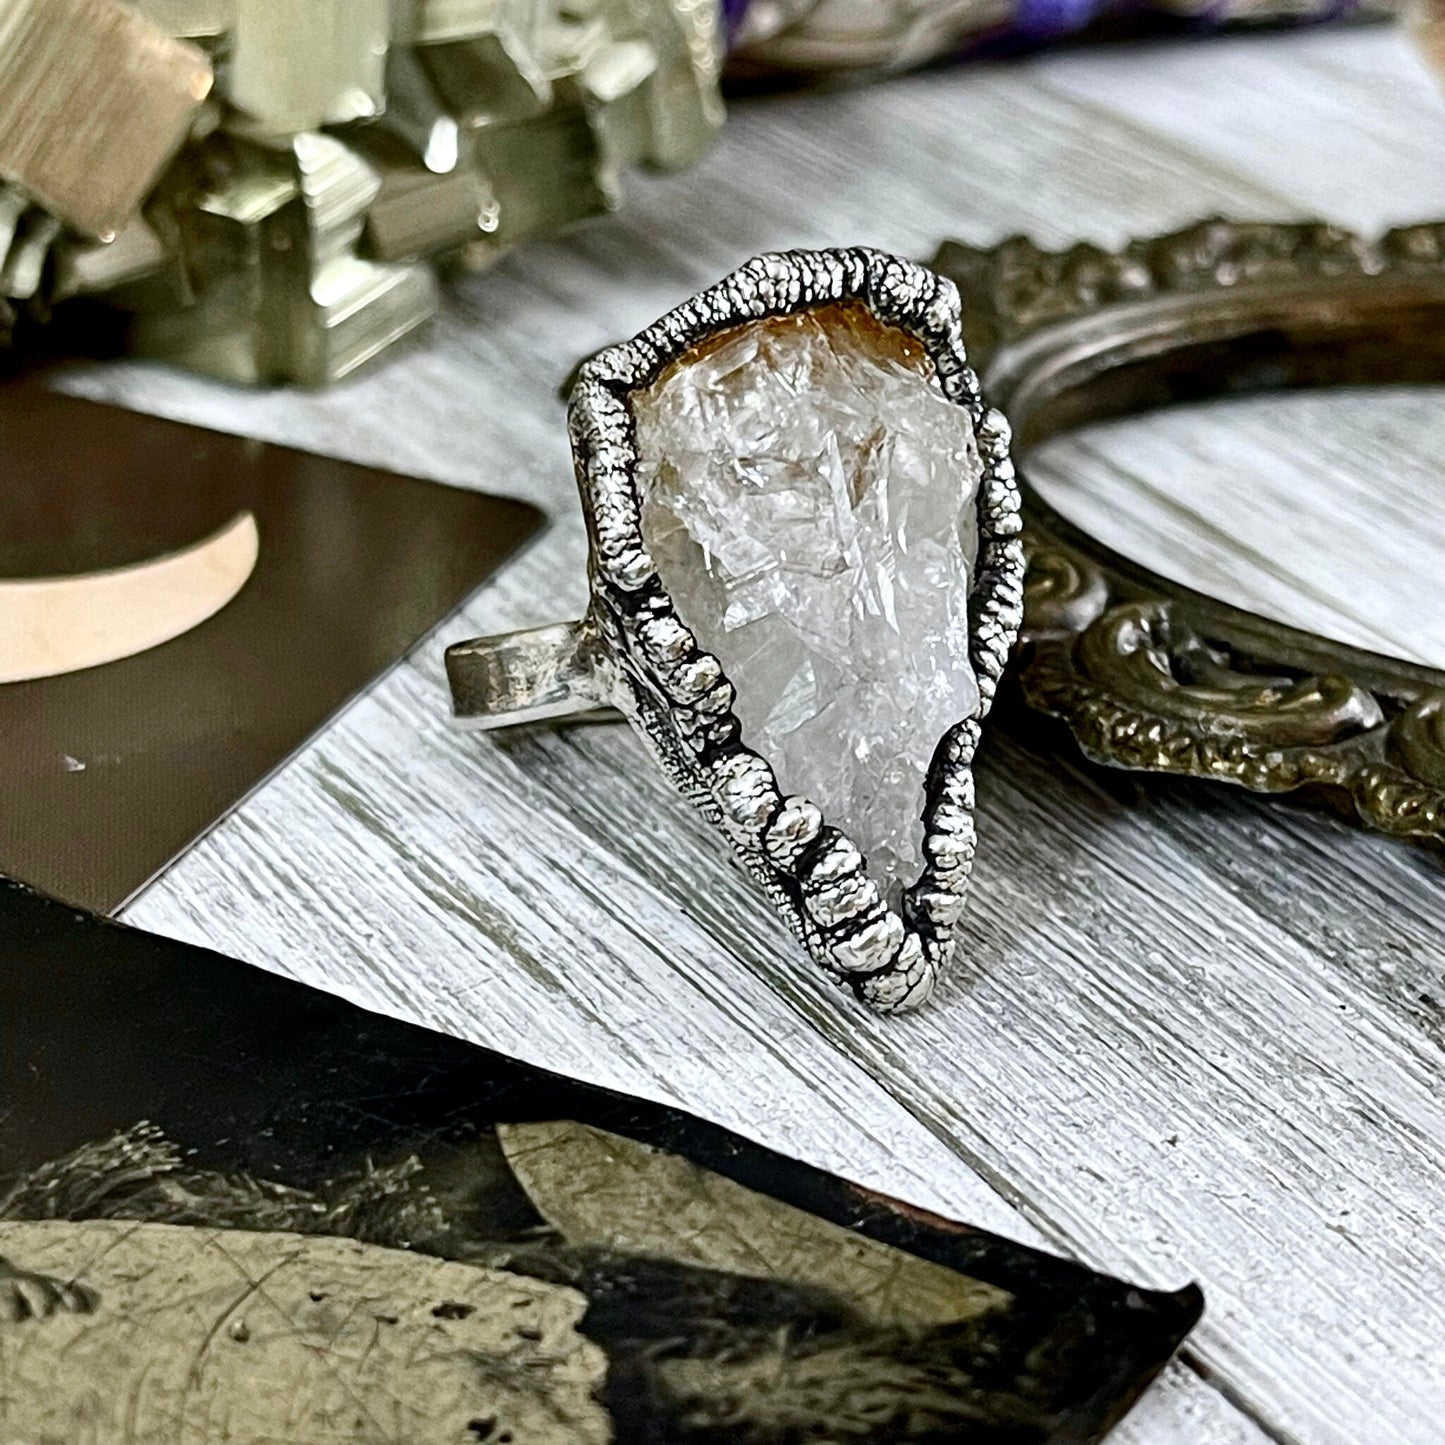 Big Crystal Ring, Big Silver Jewelry, Big Silver Ring, Big Statement Ring, Big Stone Ring, citrine Ring, Etsy ID: 1124578964, Foxlark Alchemy, FOXLARK- RINGS, Jewelry, Large Crystal Ring, Raw Crystal Ring, raw gemstone ring, Raw Quartz Ring, Rings, silver